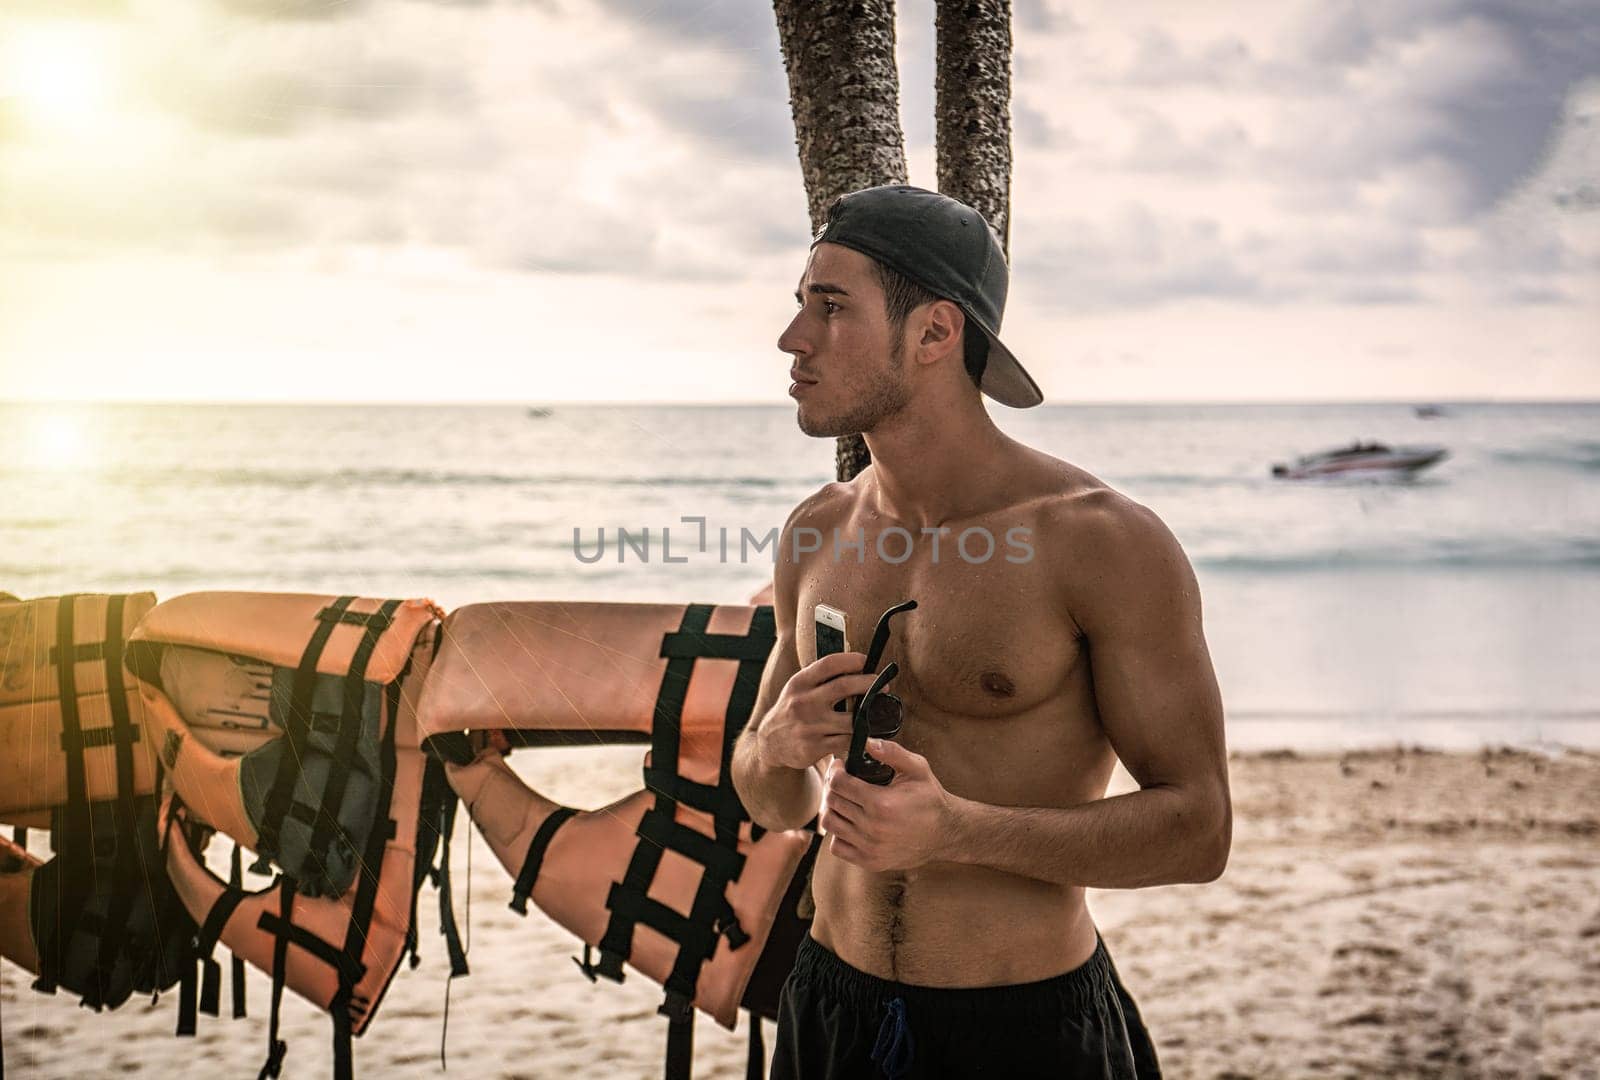 A man standing on a beach holding a surfboard